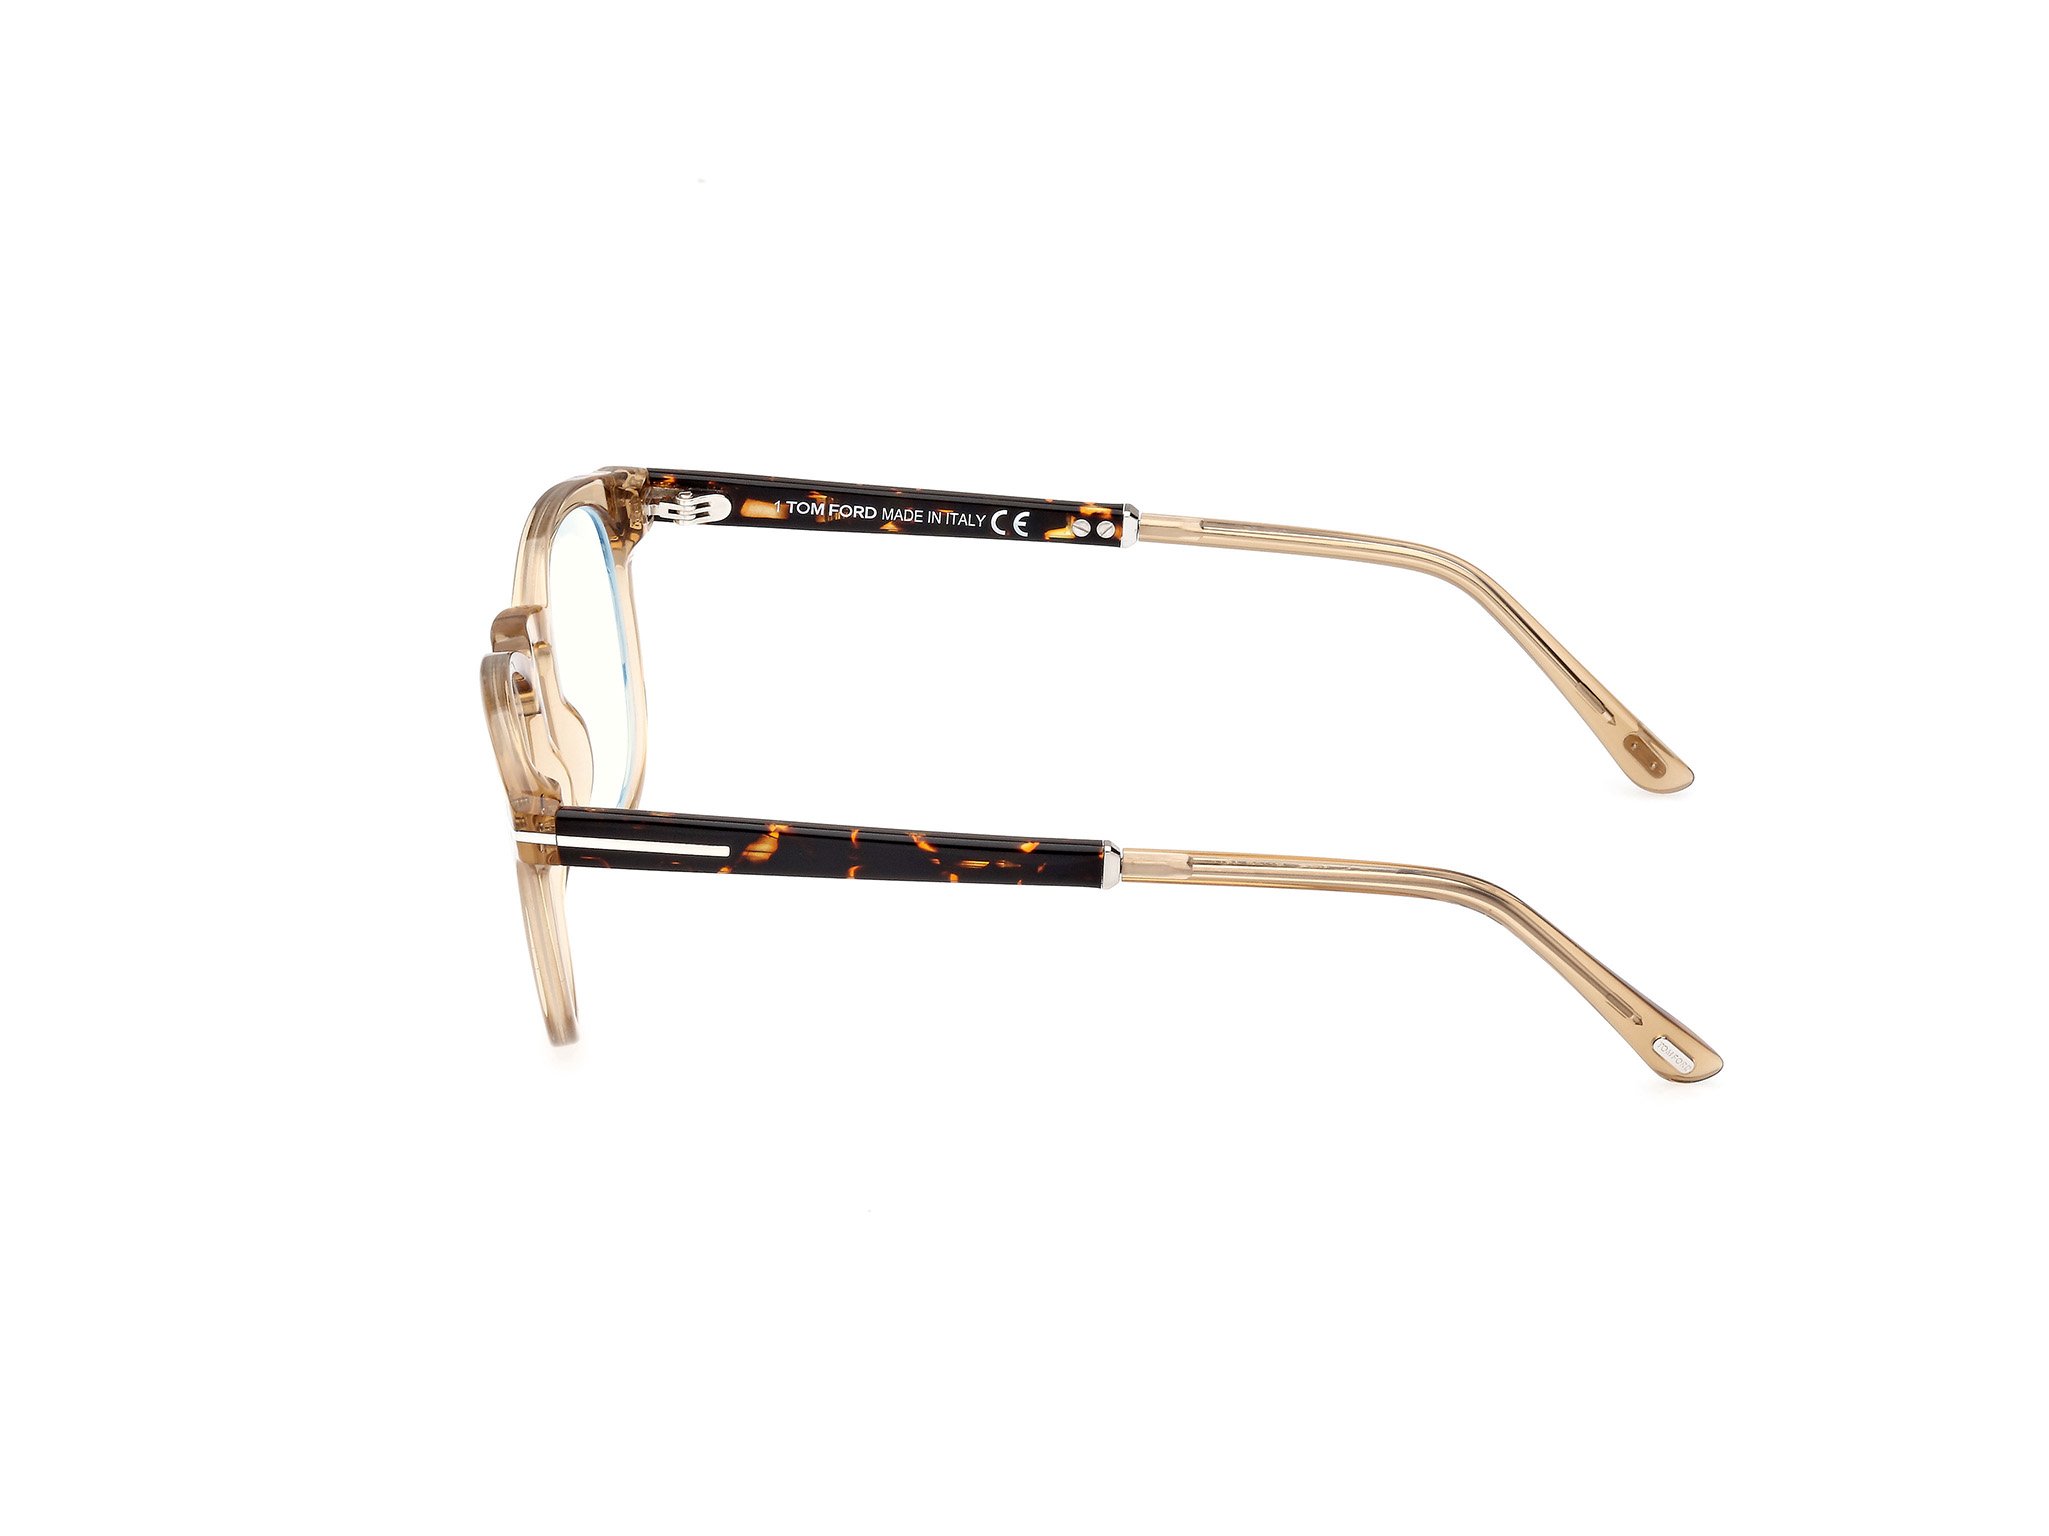 Das Bild zeigt die Korrektionsbrille FT5891-B 047 von der Marke Tom Ford in gold.